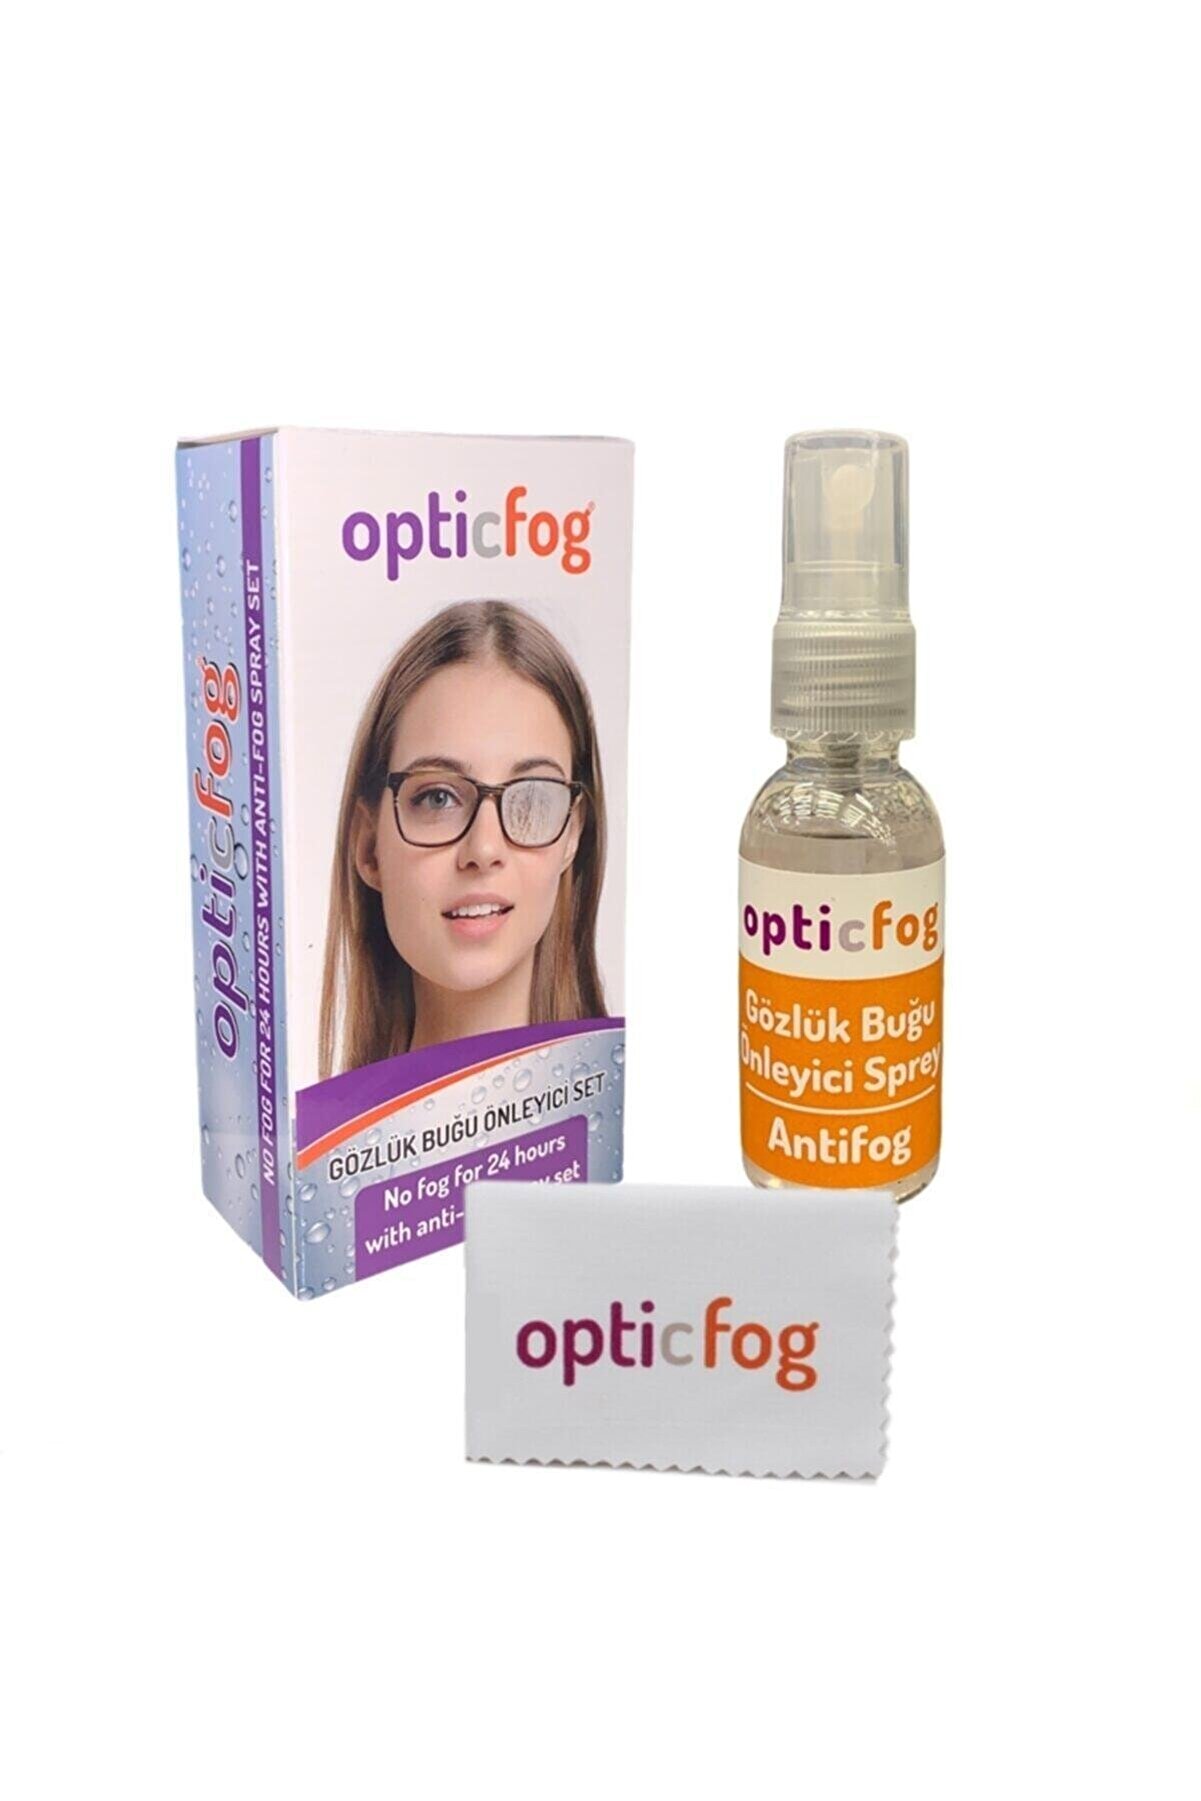 JULIANO Opticfog Gözlük Buğu-buhar Önleyici Antifog Set 30 ml + Gözlük Dezenfektan Temizleme Seti Hediye